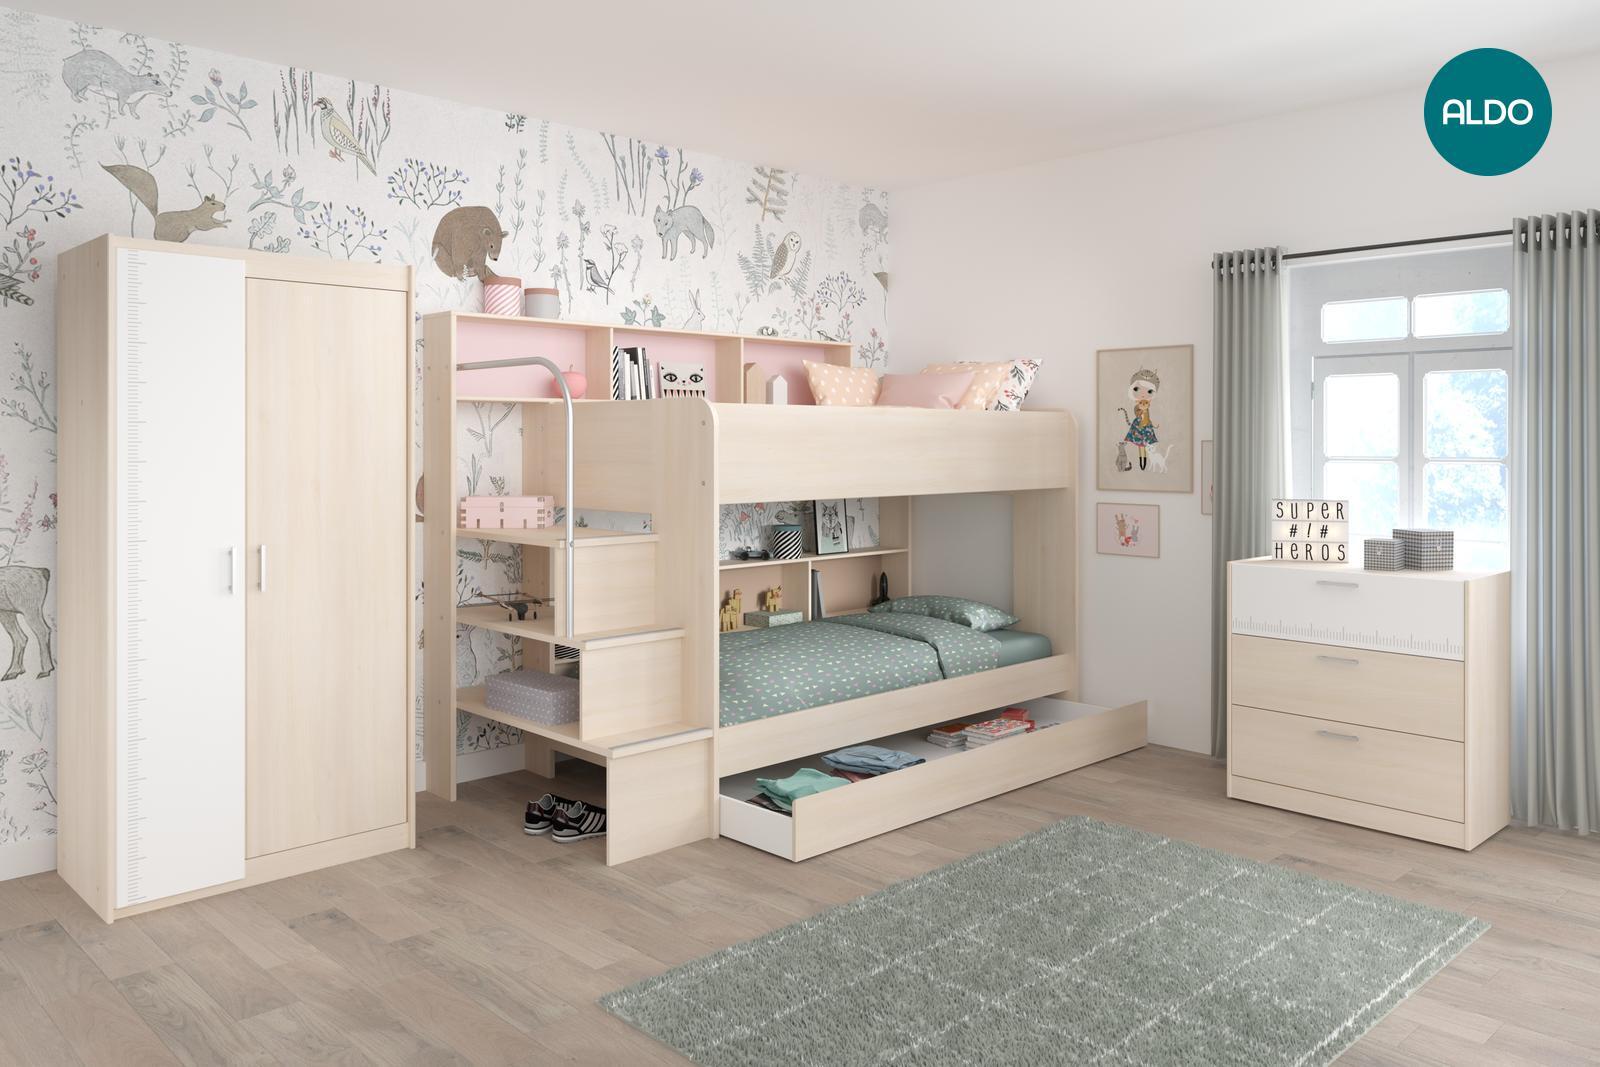 Pokój dziecięcy z łóżkiem piętrowym i biurkami Bibop